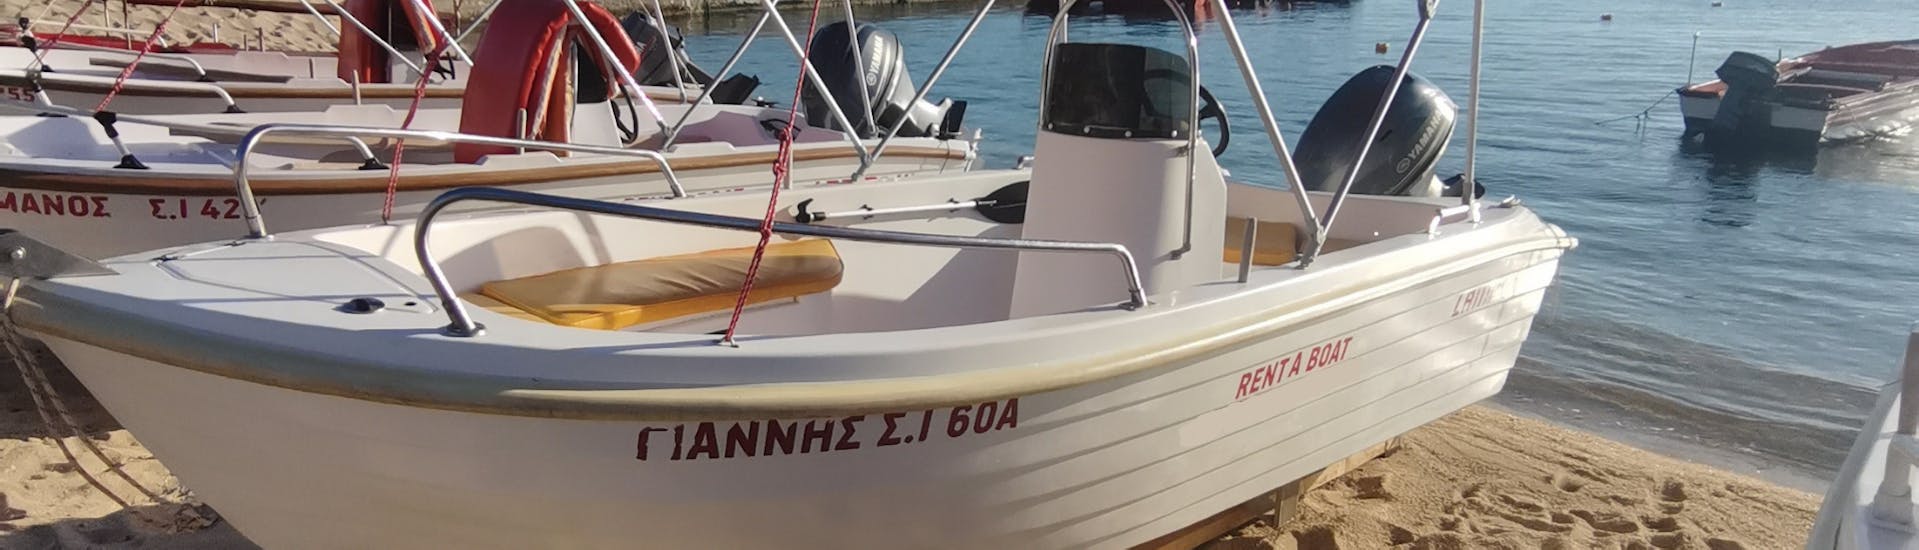 De boot ligt op het strand tijdens de Bootverhuur in Ouranoupoli (tot 5 personen) zonder Licentie met Rent a Boat Lampou.